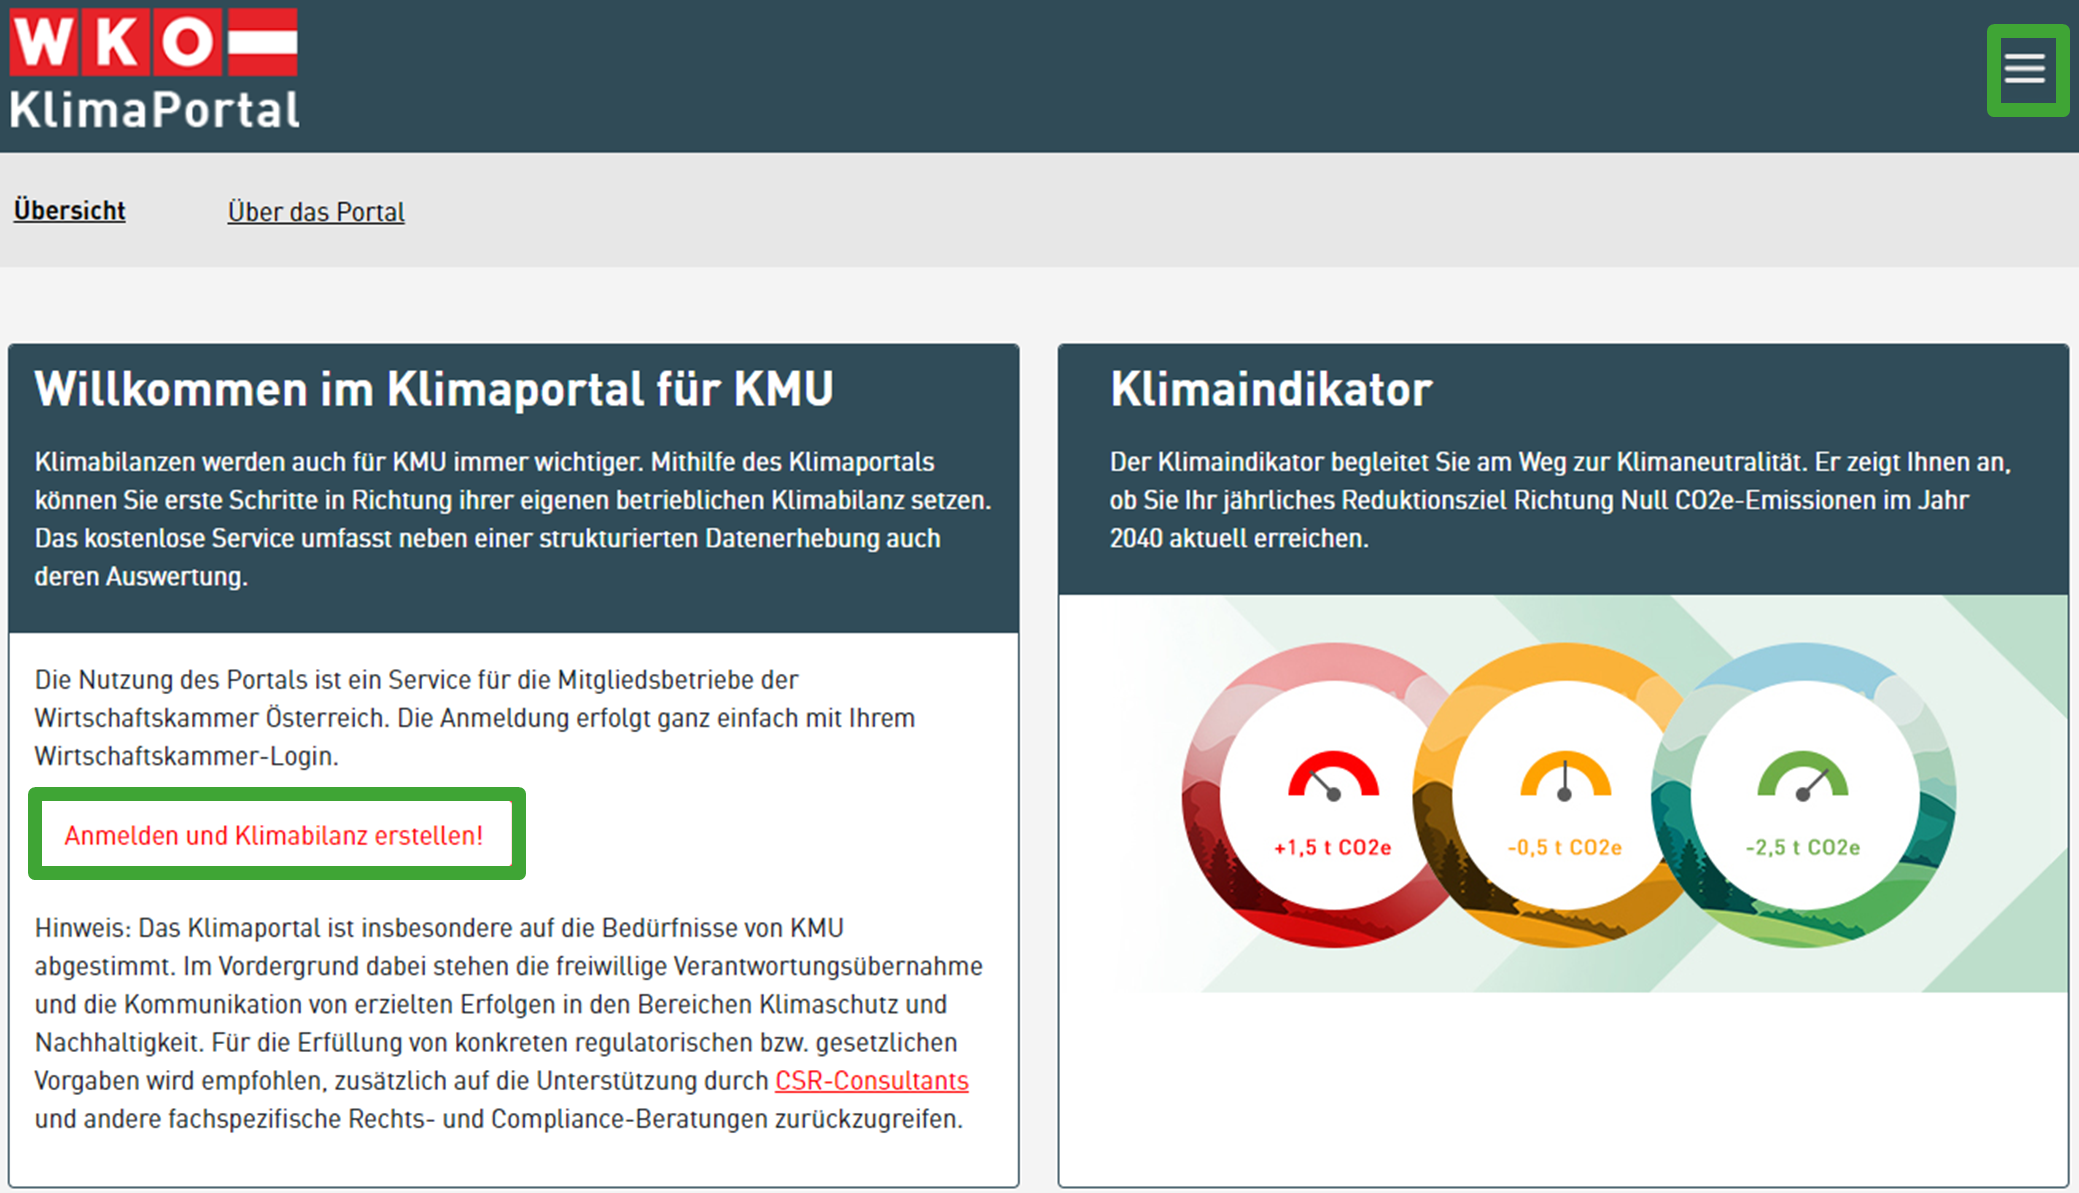 Screenshot des Klimaportal mit den Navipunkten Übersicht und Über das Portal, Inhaltsbereiche mit Texten zu Willkommen im Klimaportal für KMU und Klimaindikator samt Kreisgrafiken